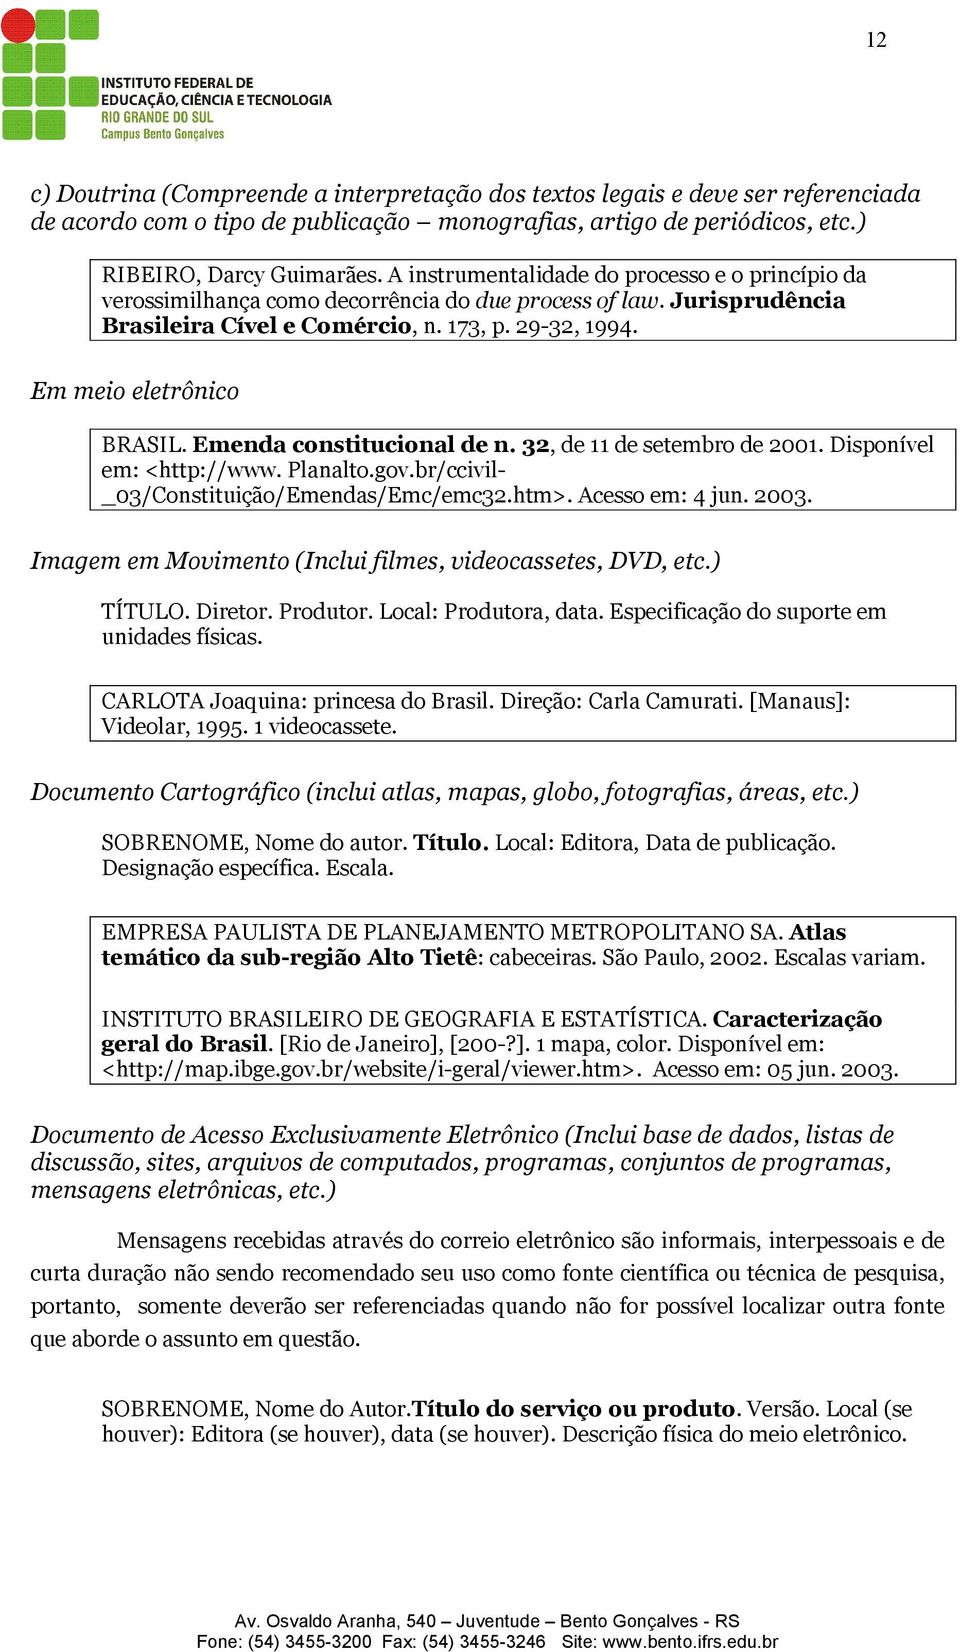 Emenda constitucional de n. 32, de 11 de setembro de 2001. Disponível em: <http://www. Planalto.gov.br/ccivil- _03/Constituição/Emendas/Emc/emc32.htm>. Acesso em: 4 jun. 2003.